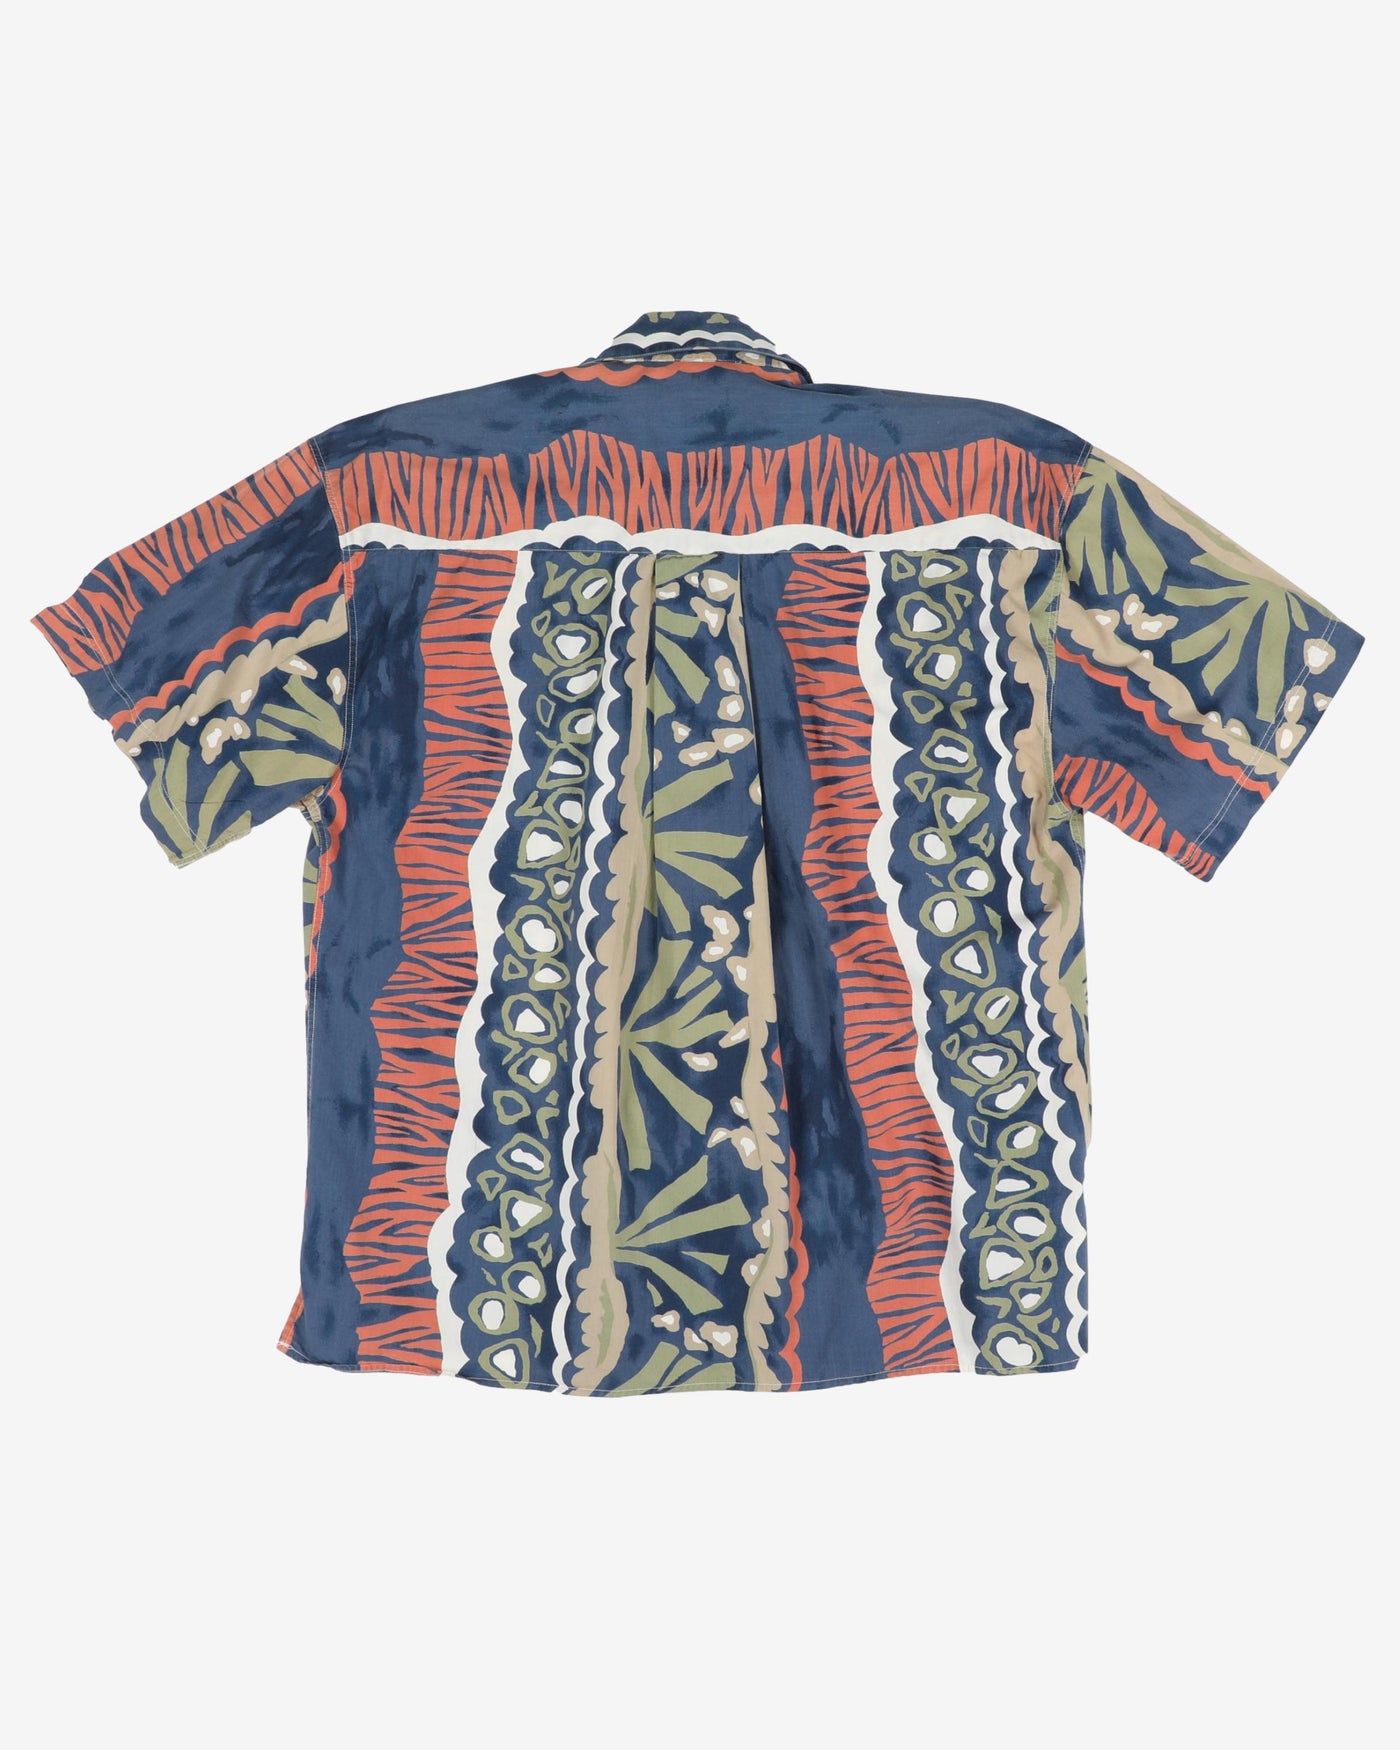 Blue and orange patterned shirt - L